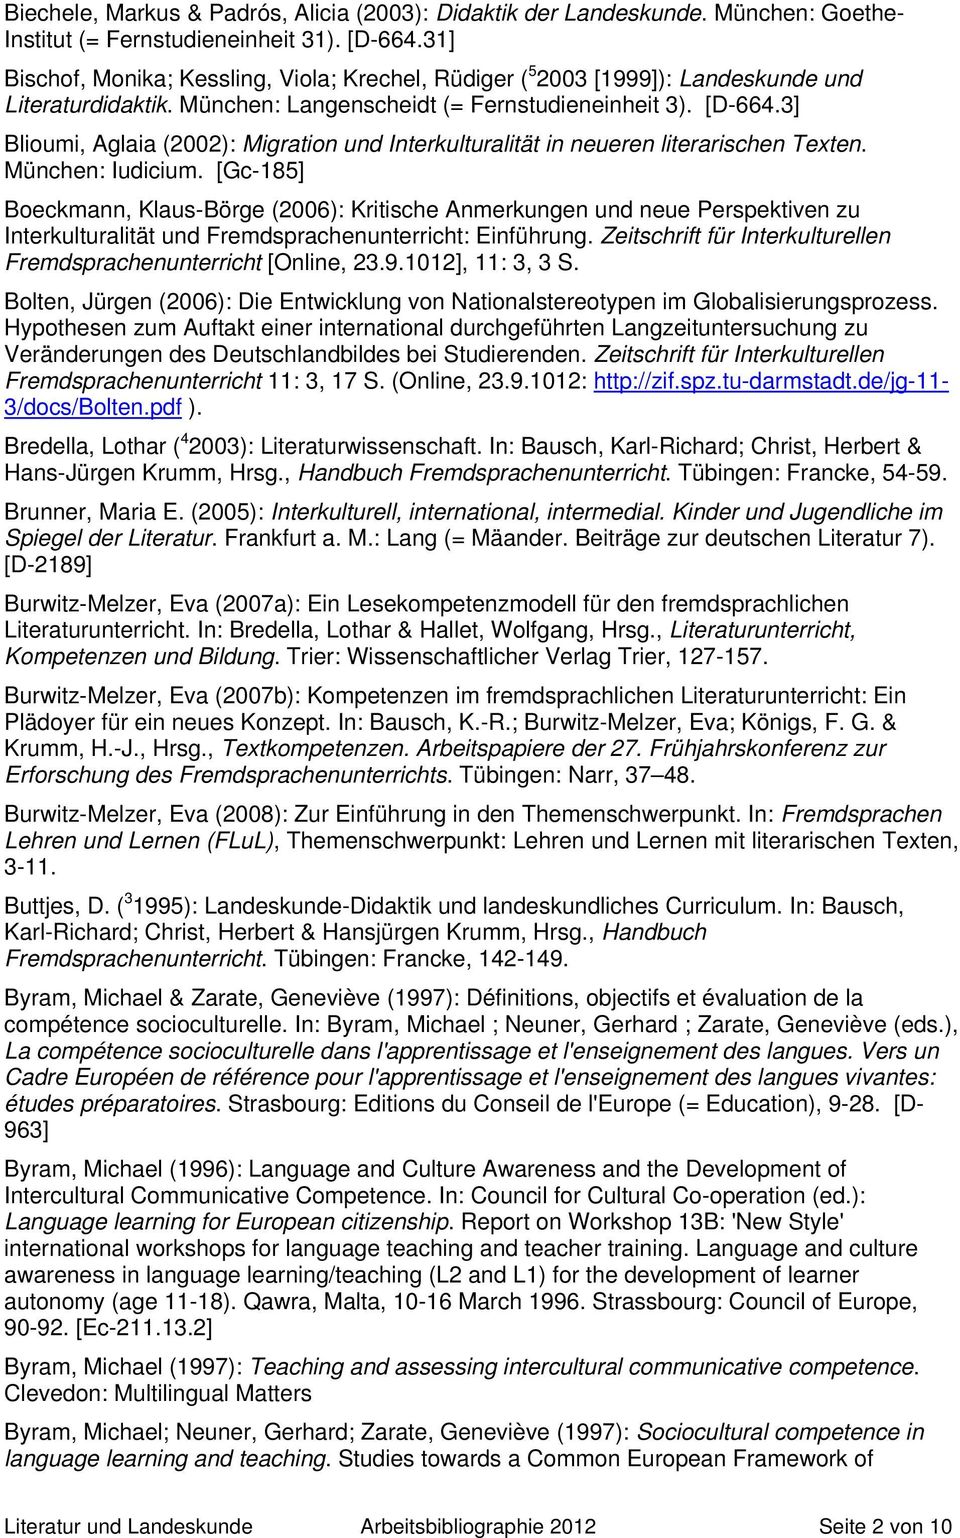 3] Blioumi, Aglaia (2002): Migration und Interkulturalität in neueren literarischen Texten. München: Iudicium.